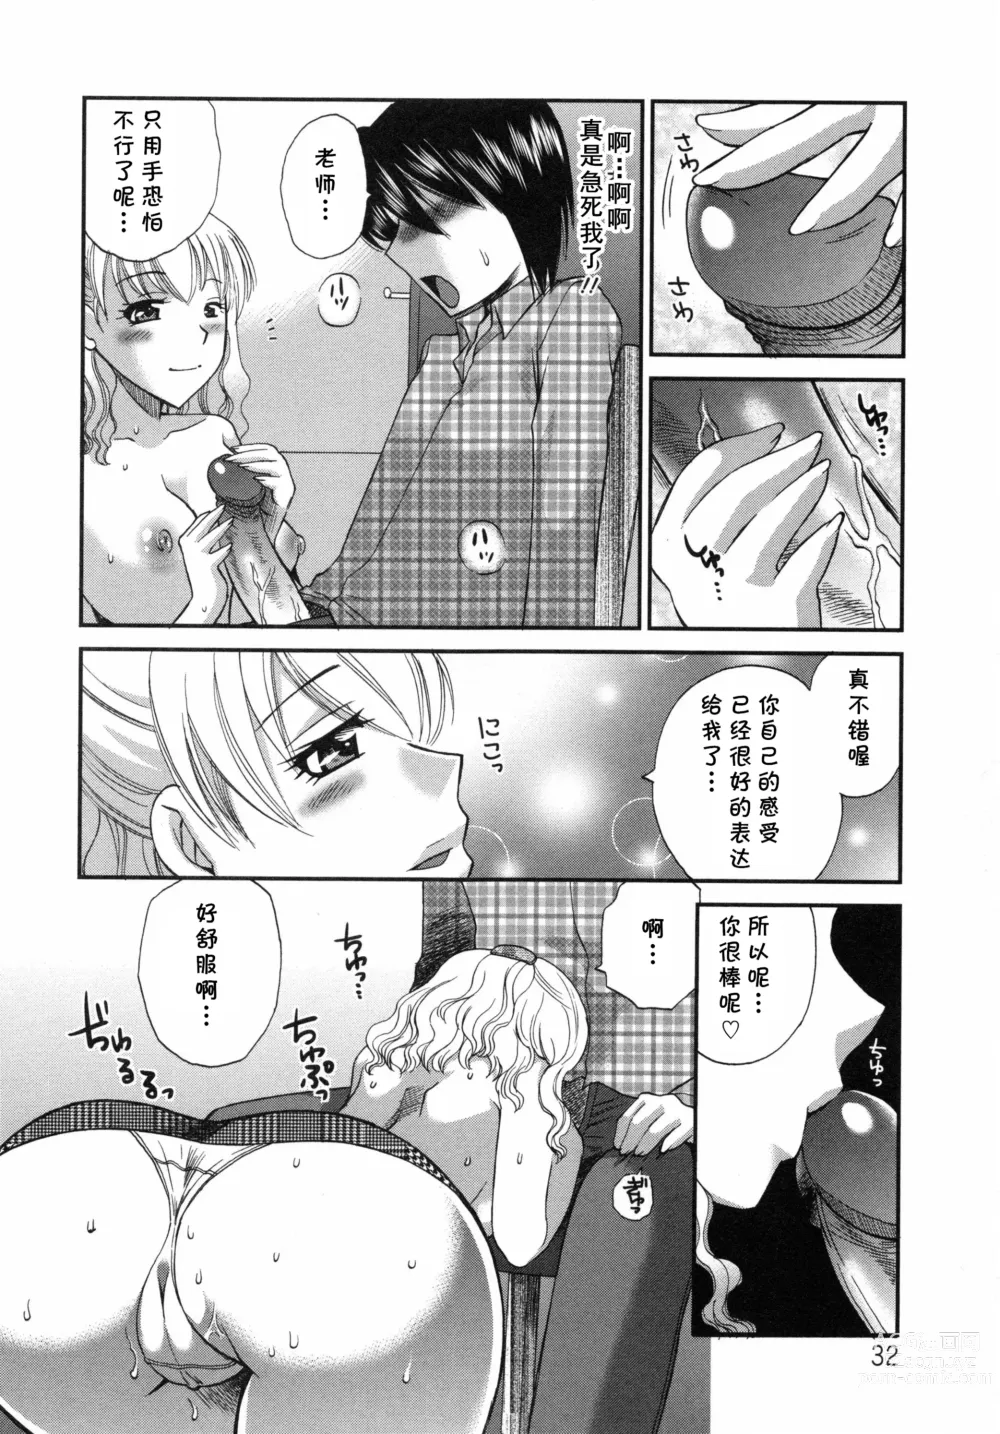 Page 8 of manga Aiyoku no Hakoniwa